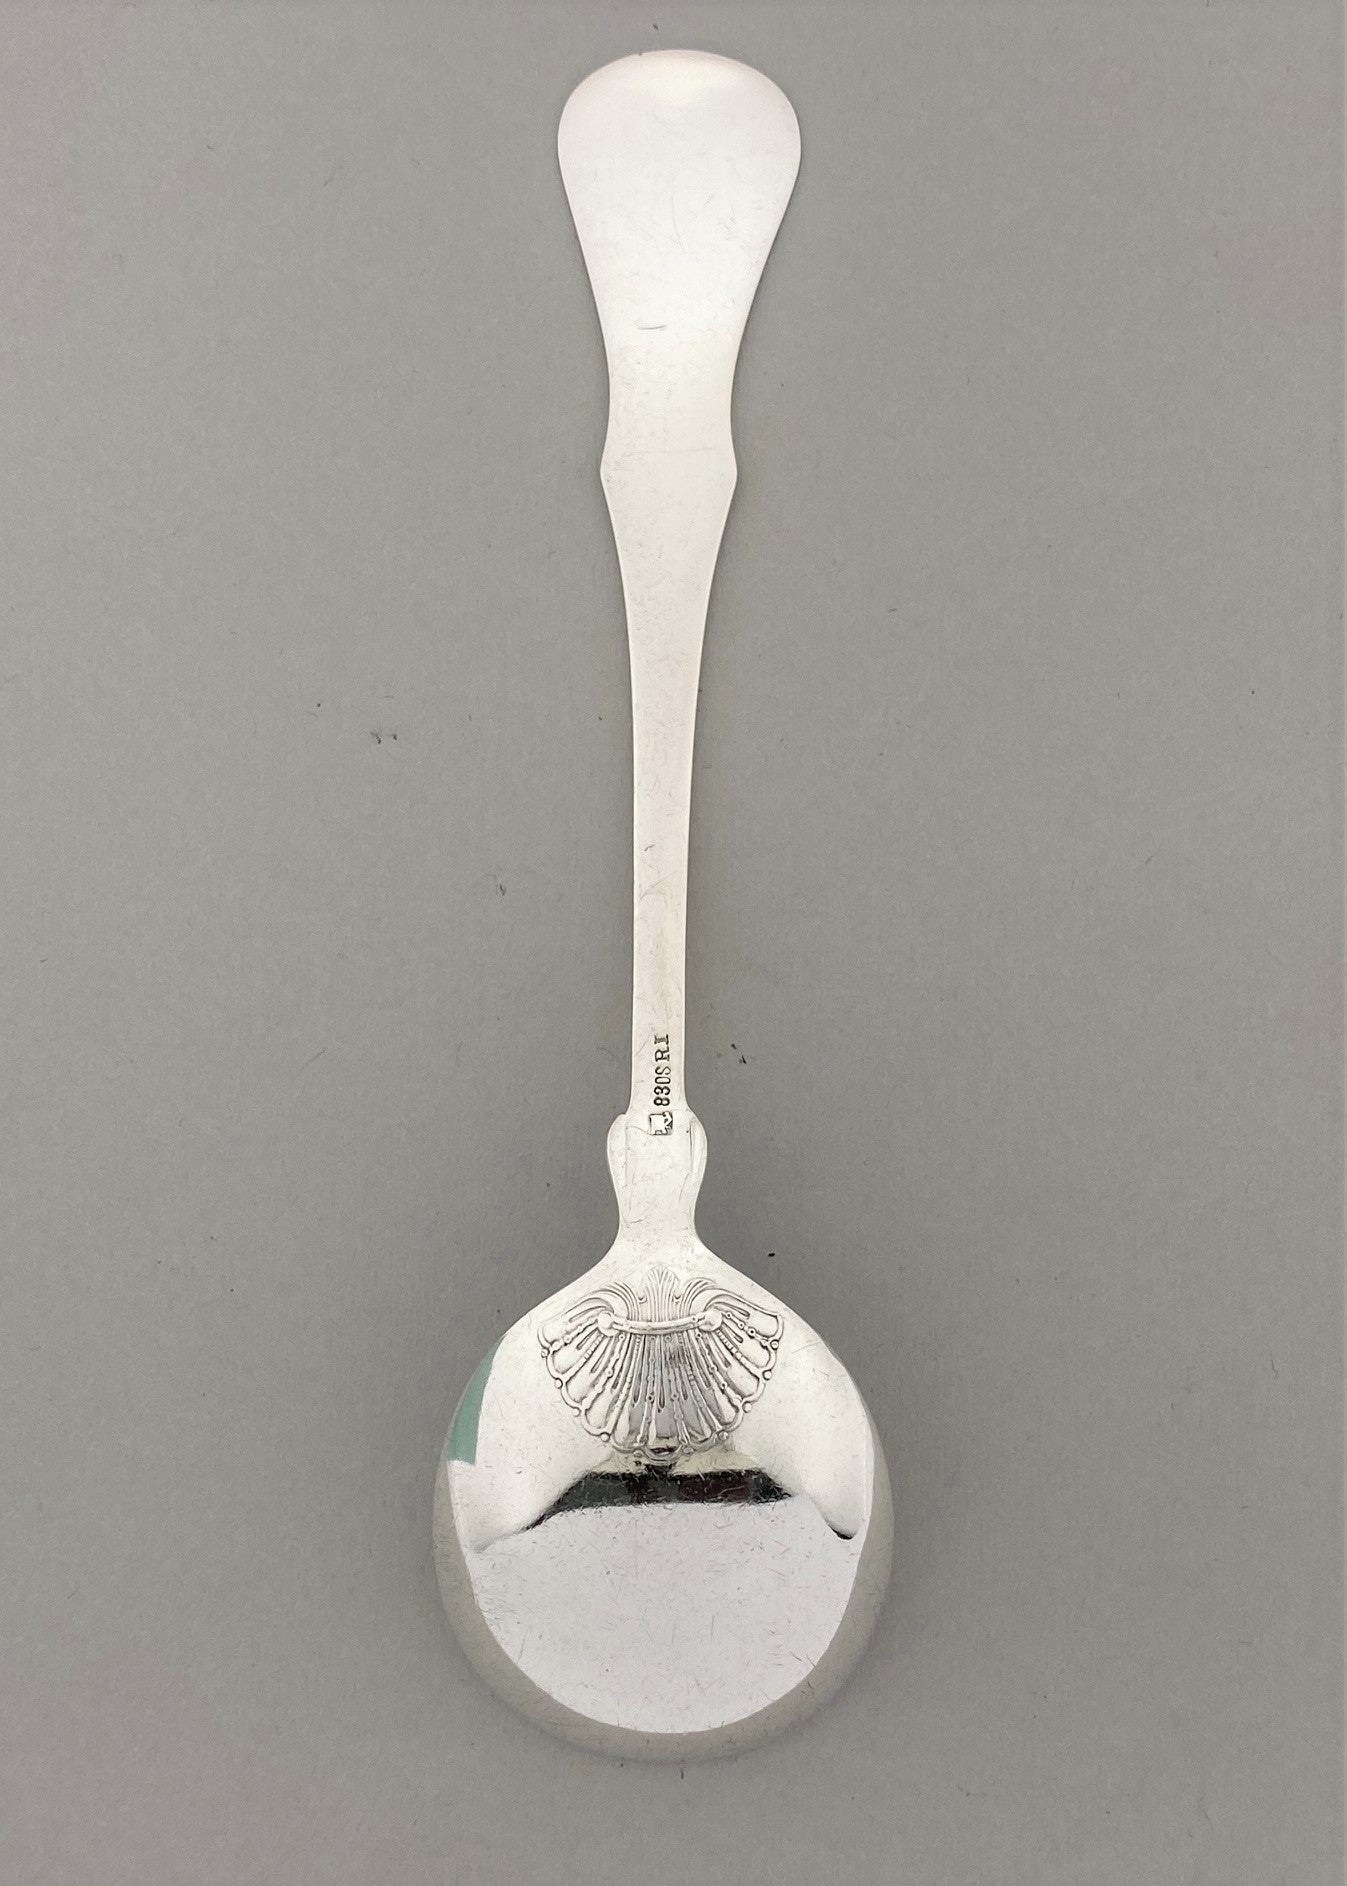 Vintage Queen jam spoon